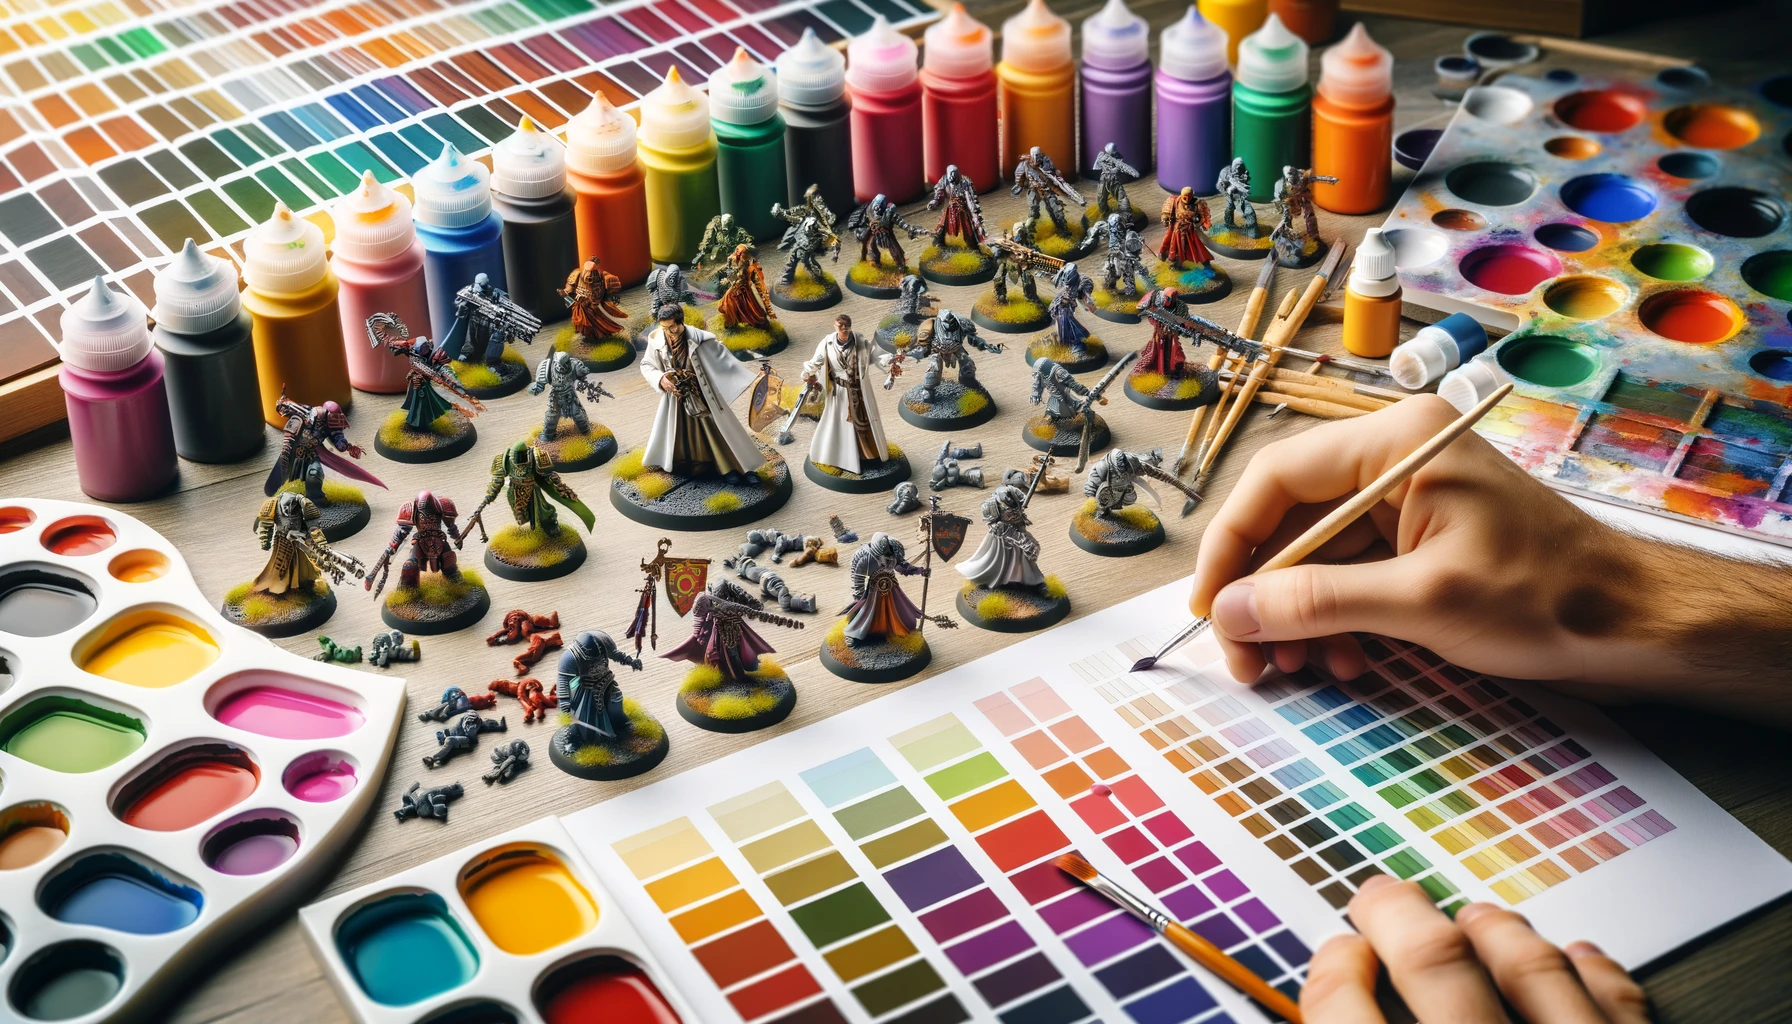  processus de choix et d'application des schémas de couleurs sur des figurines miniatures